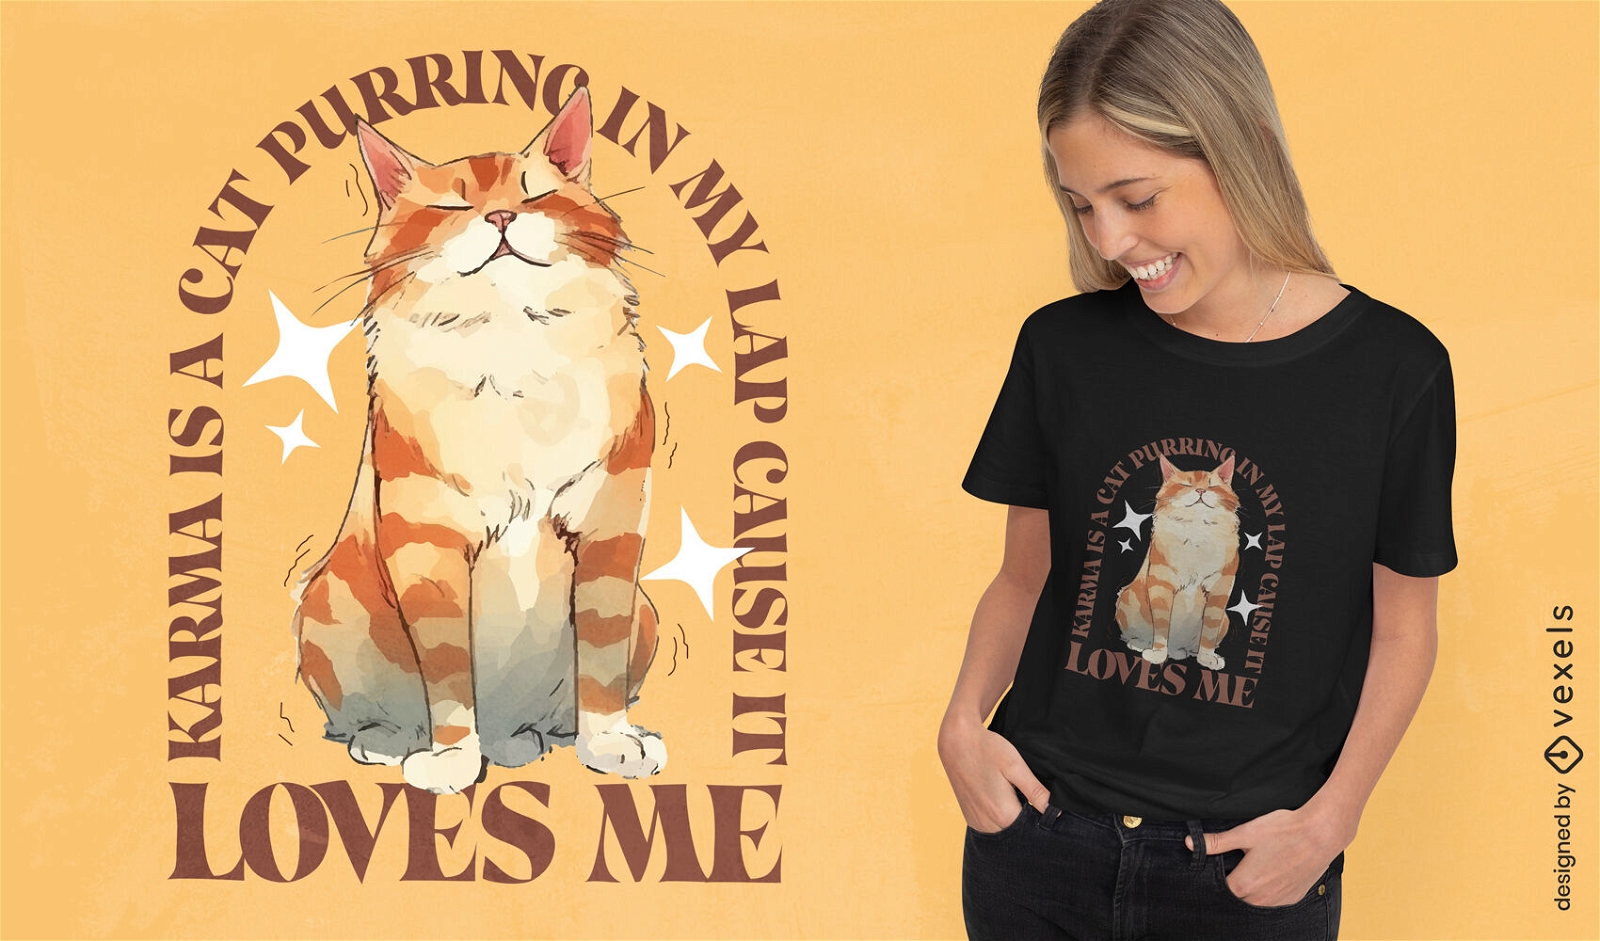 Karma ist ein T-Shirt-Design mit schnurrender Katze